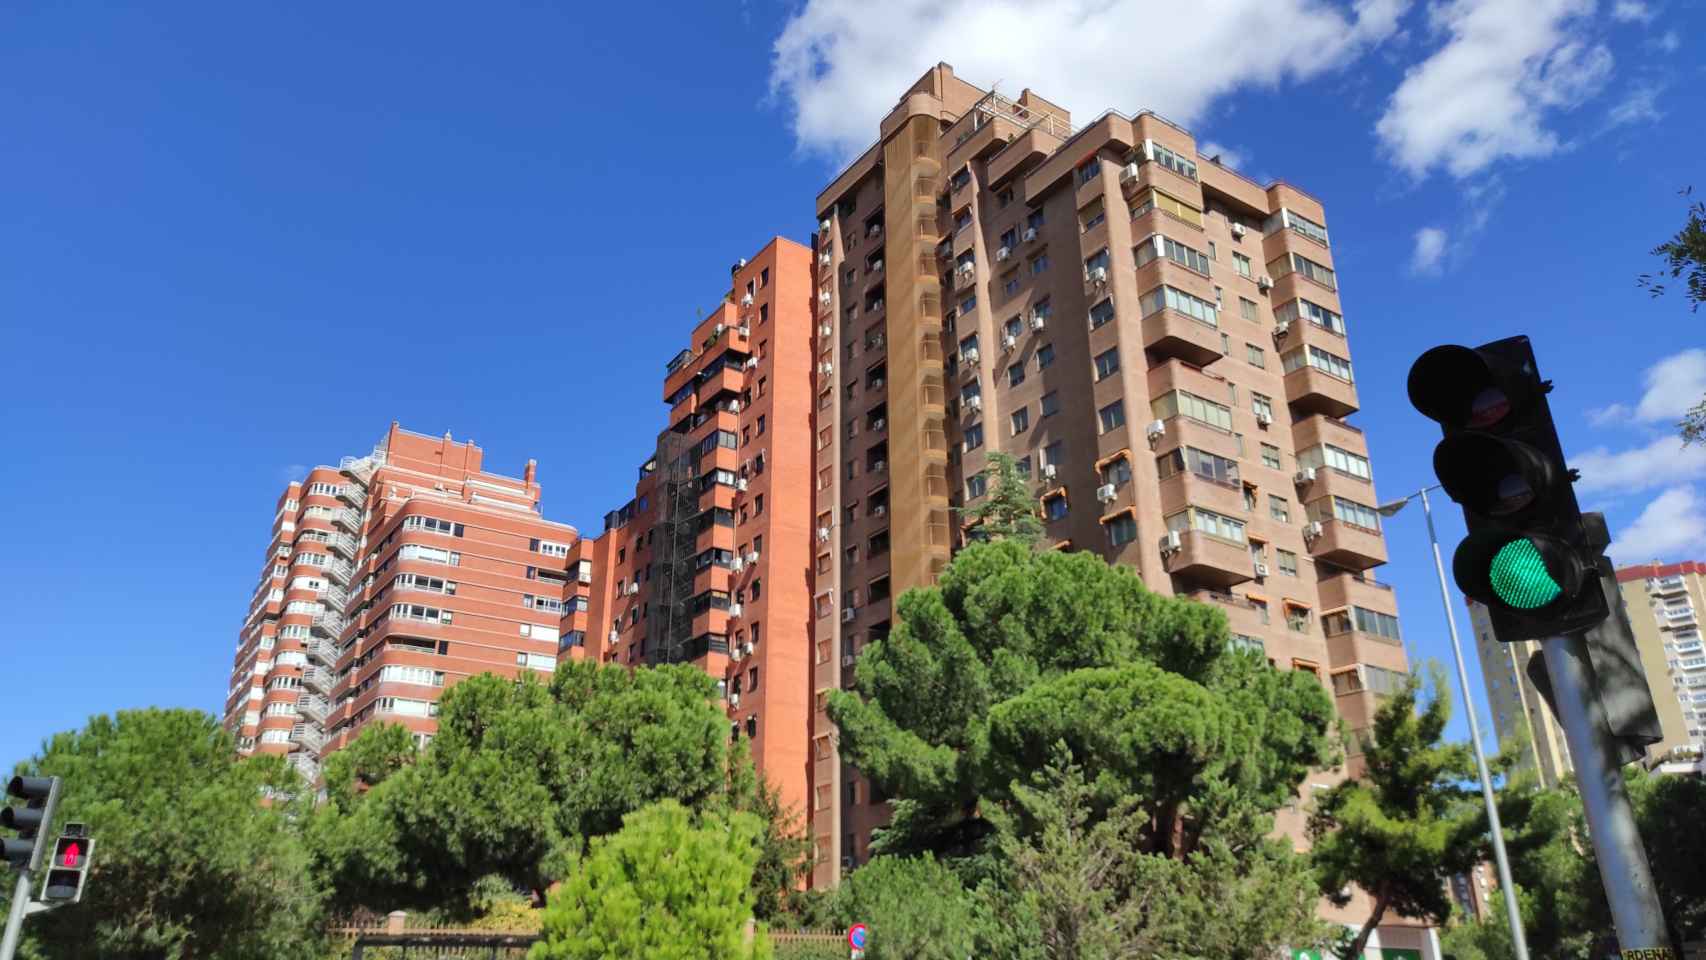 Edificios de viviendas en Madrid.